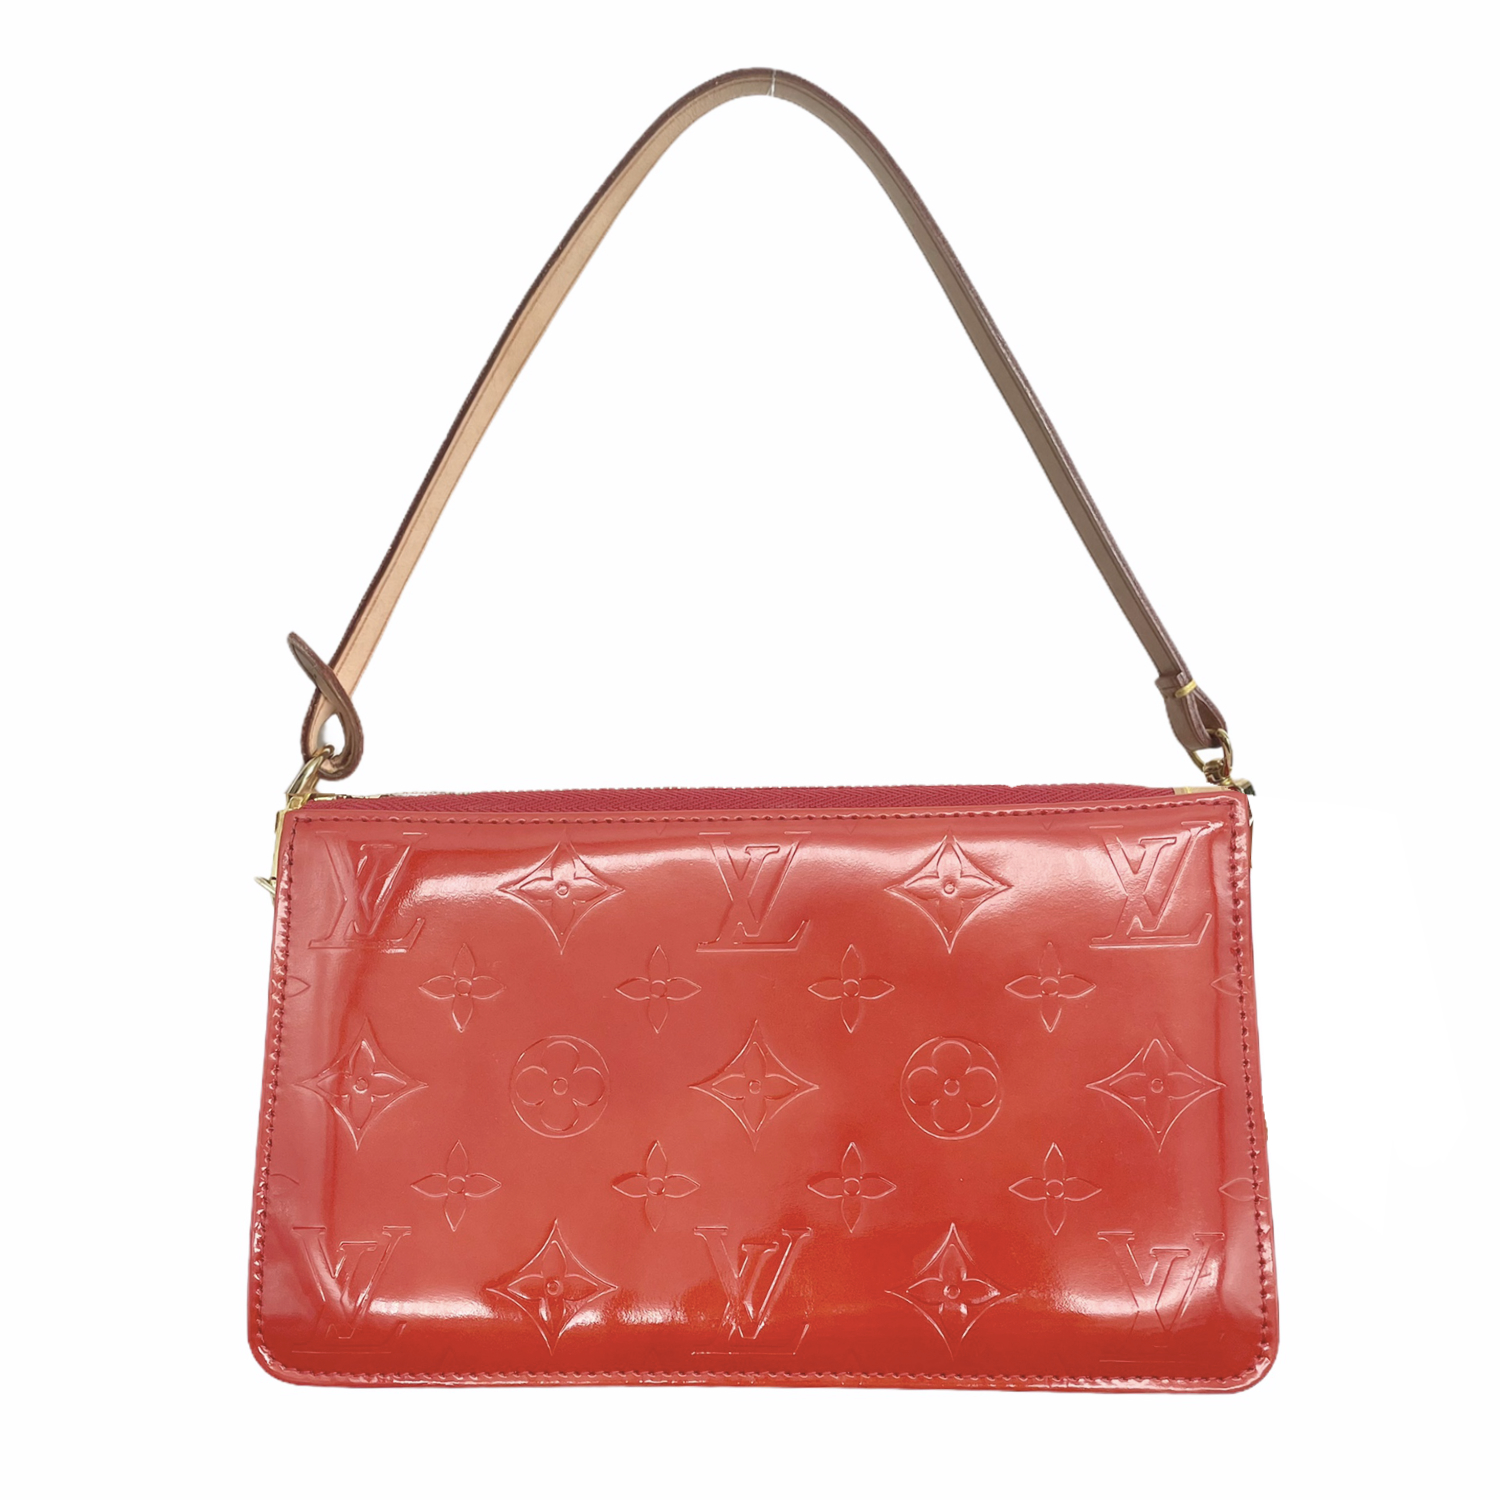 Louis Vuitton Mini  shoulderbag